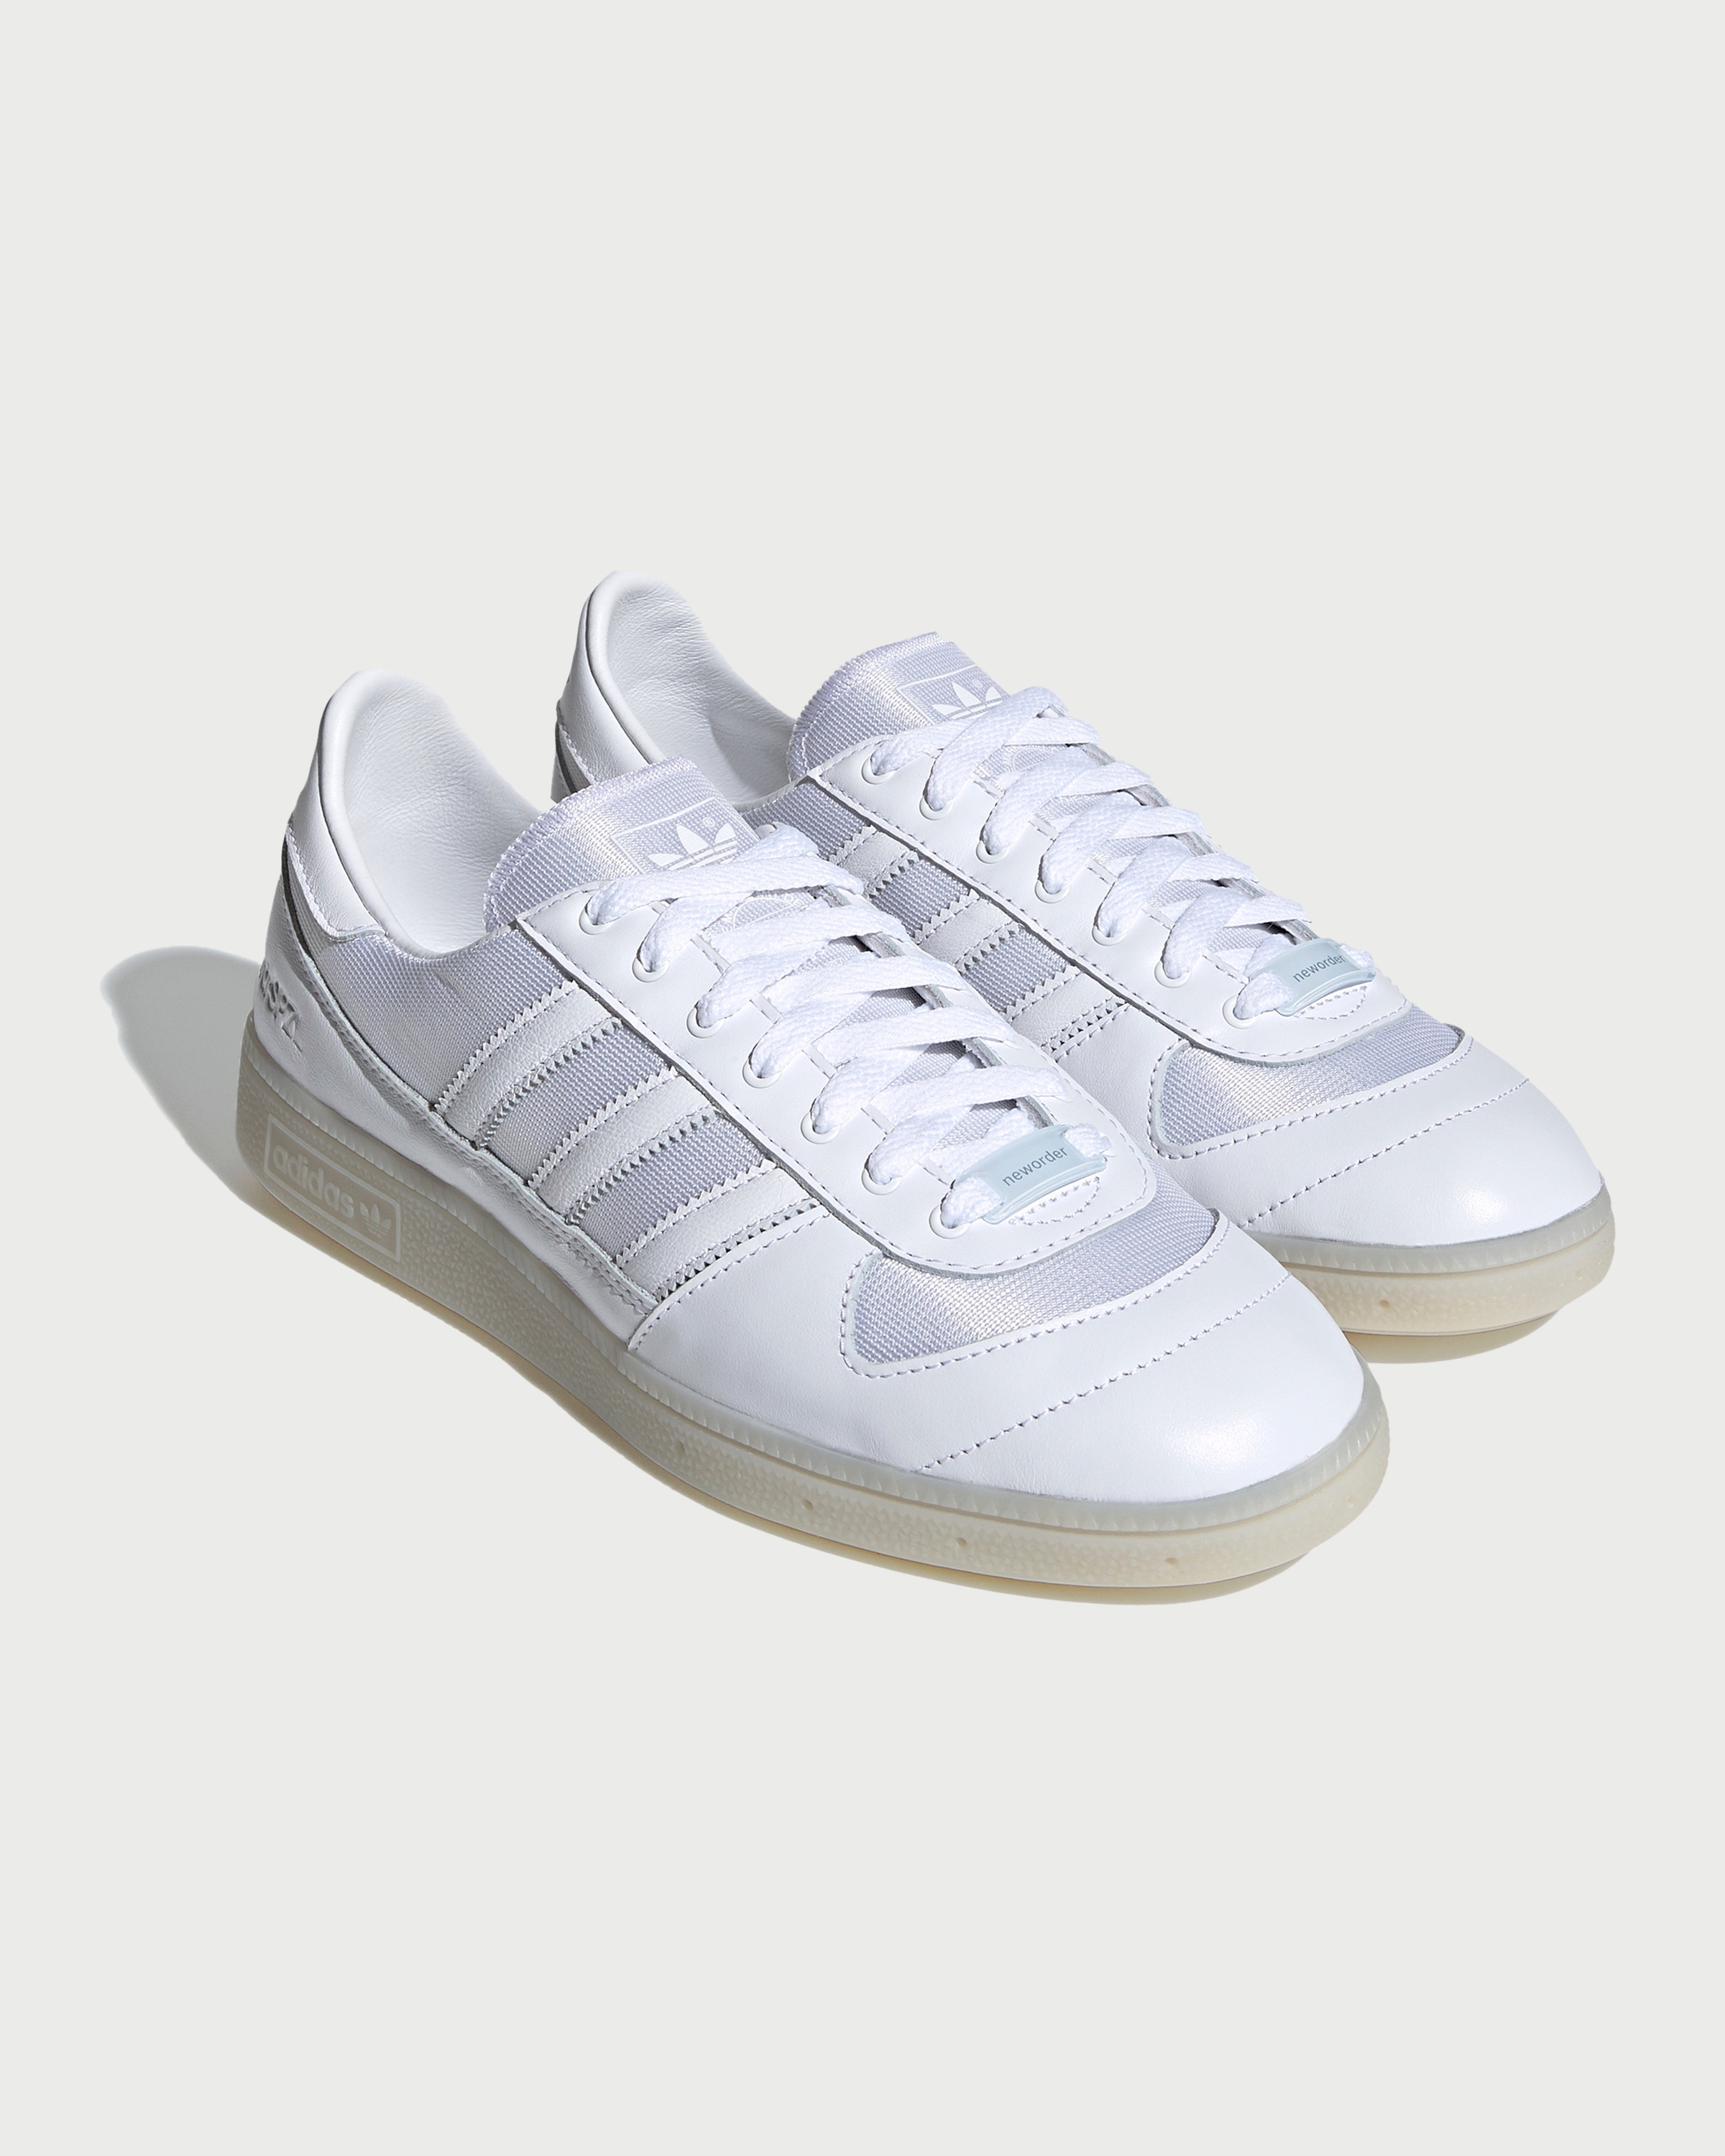 Adidas – Wilsy Spezial x New Order White - Sneakers - White - Image 2